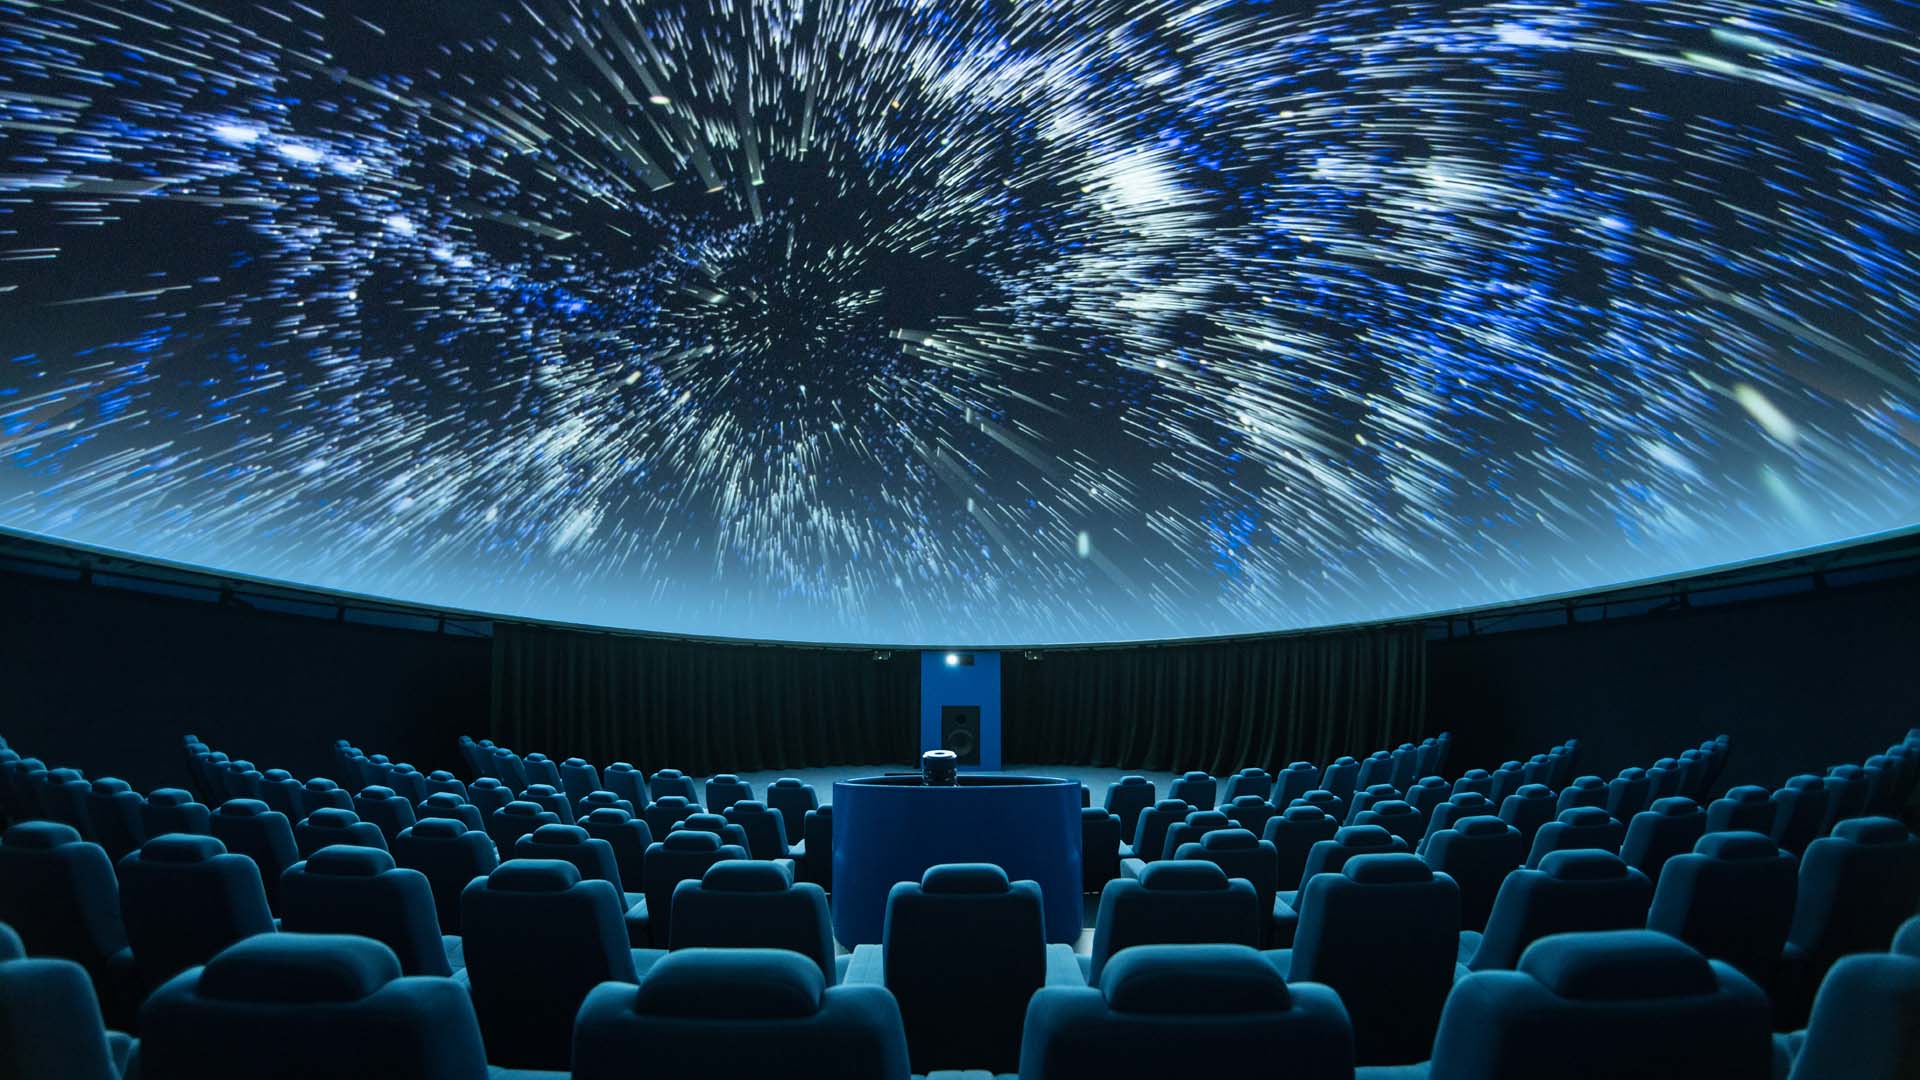 Jak w planetarium - projektor rozgwieżdżonego nieba wyświetla gwiazdy i meteory na suficie pokoju. Pavel Gabzdyl/Shutterstock.com